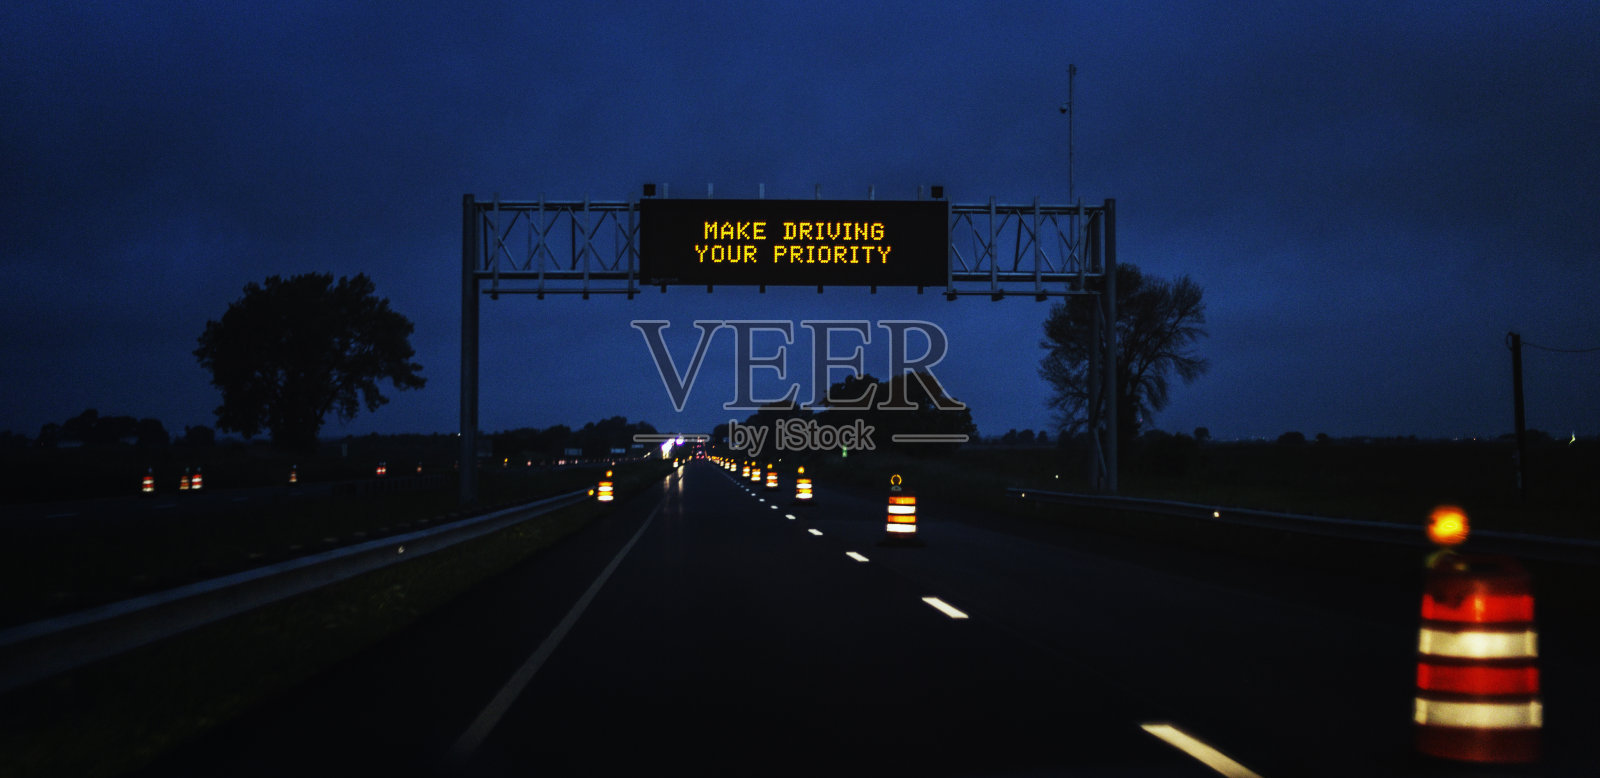 高速公路夜间施工区，使驾驶成为您优先的道路标志照片摄影图片